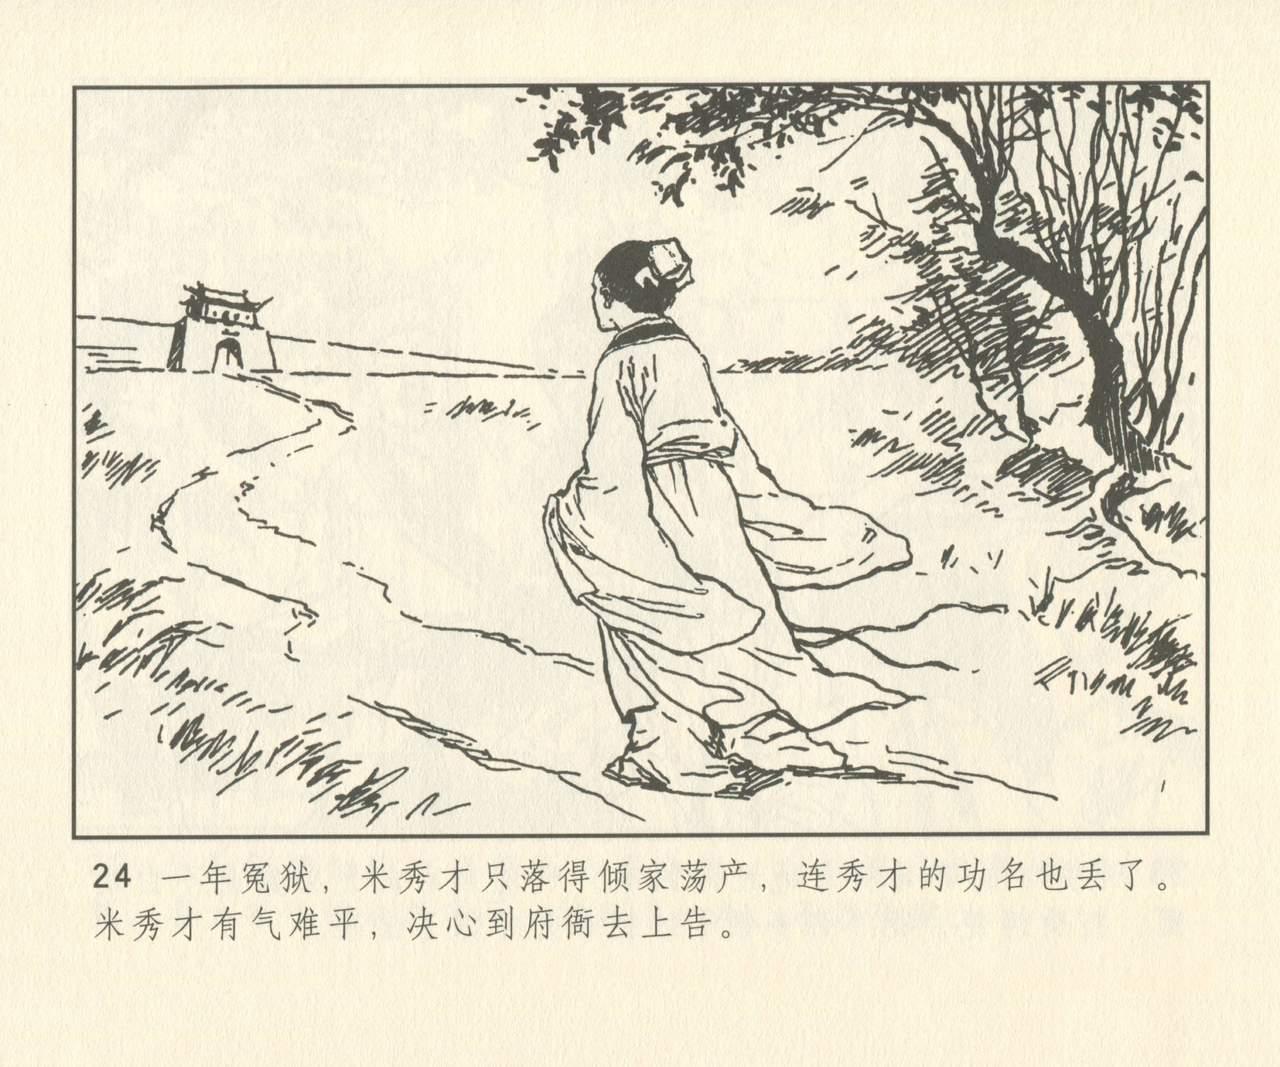 聊斋志异 张玮等绘 天津人民美术出版社 卷二十一 ~ 三十 152